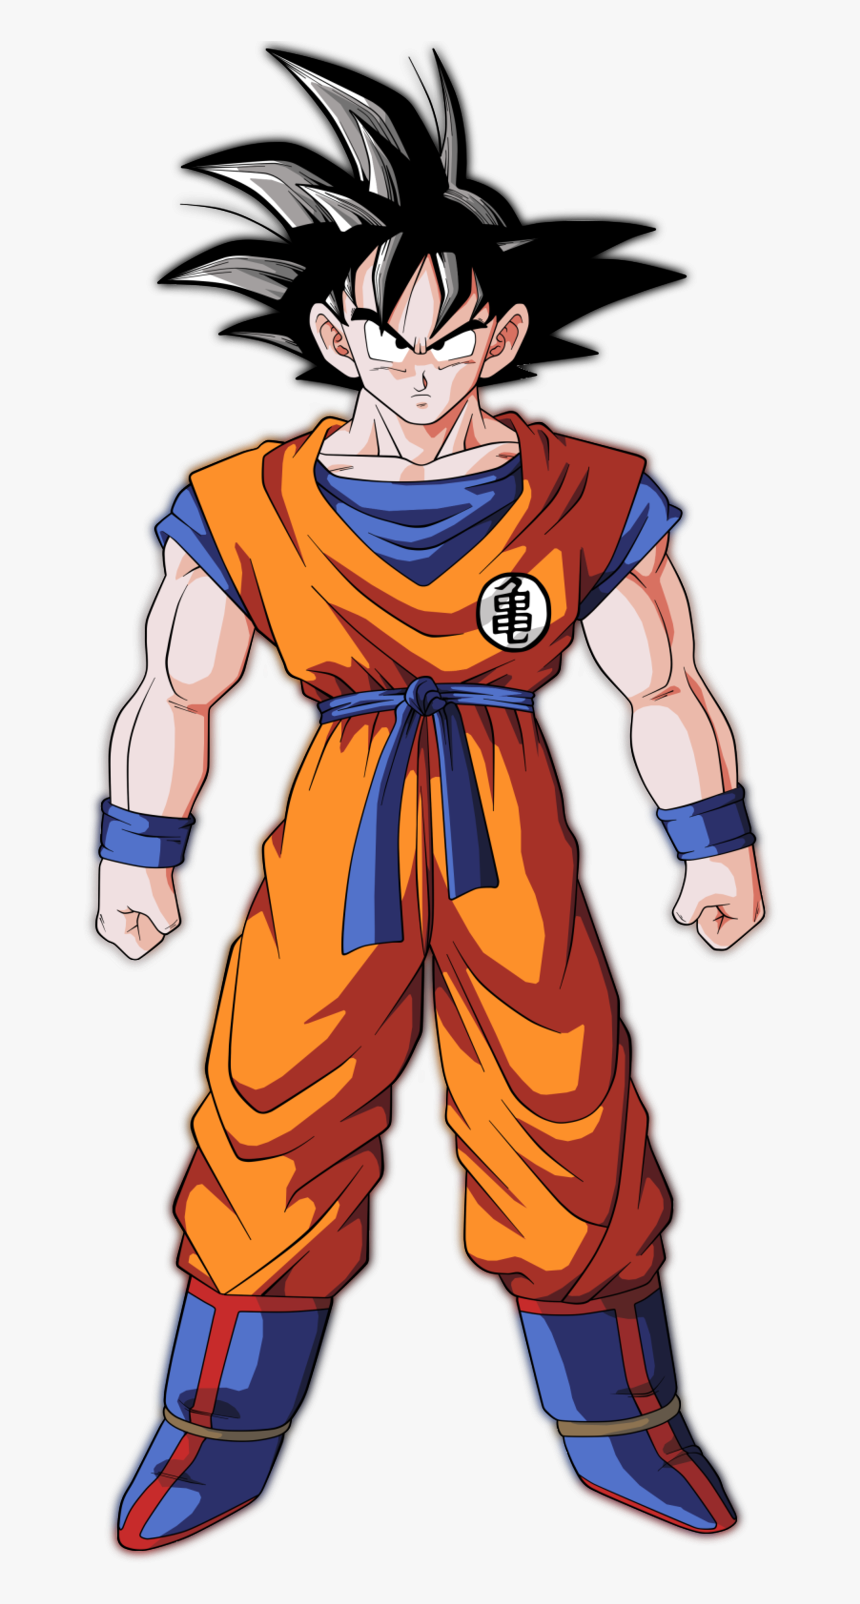 Image Image Son Goku Character Art Png Wiki - Dragon Ball Z Son Goku ...